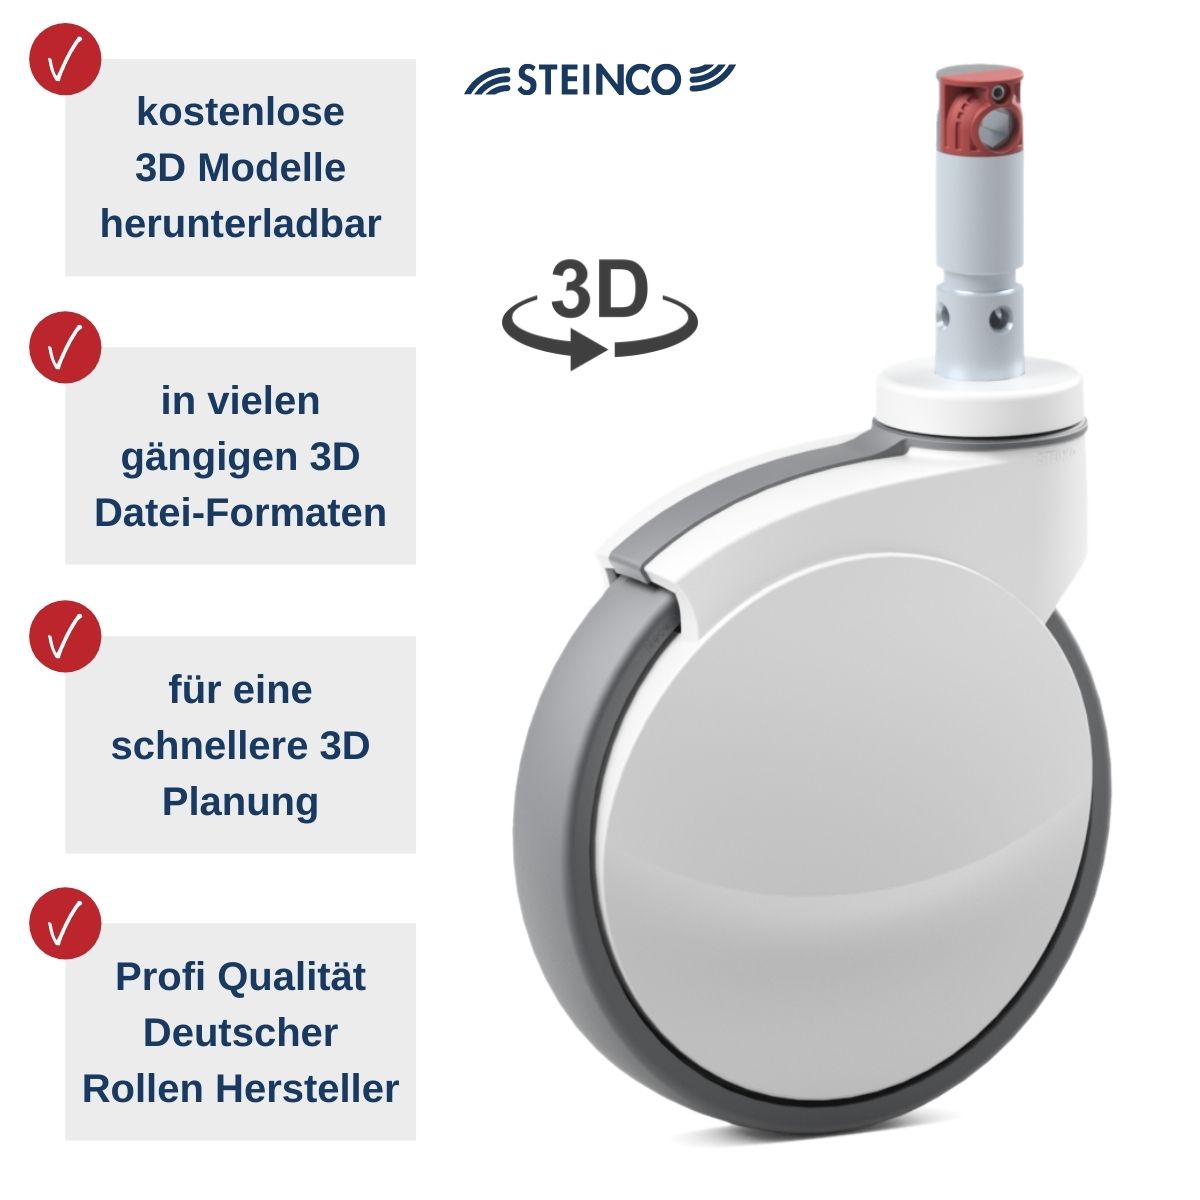 Steinco Medical Rollen - kostenlose 3D Modelle in vielen Dateiformaten für Planer, Konstrukteure, Projekteure und Produktentwickler